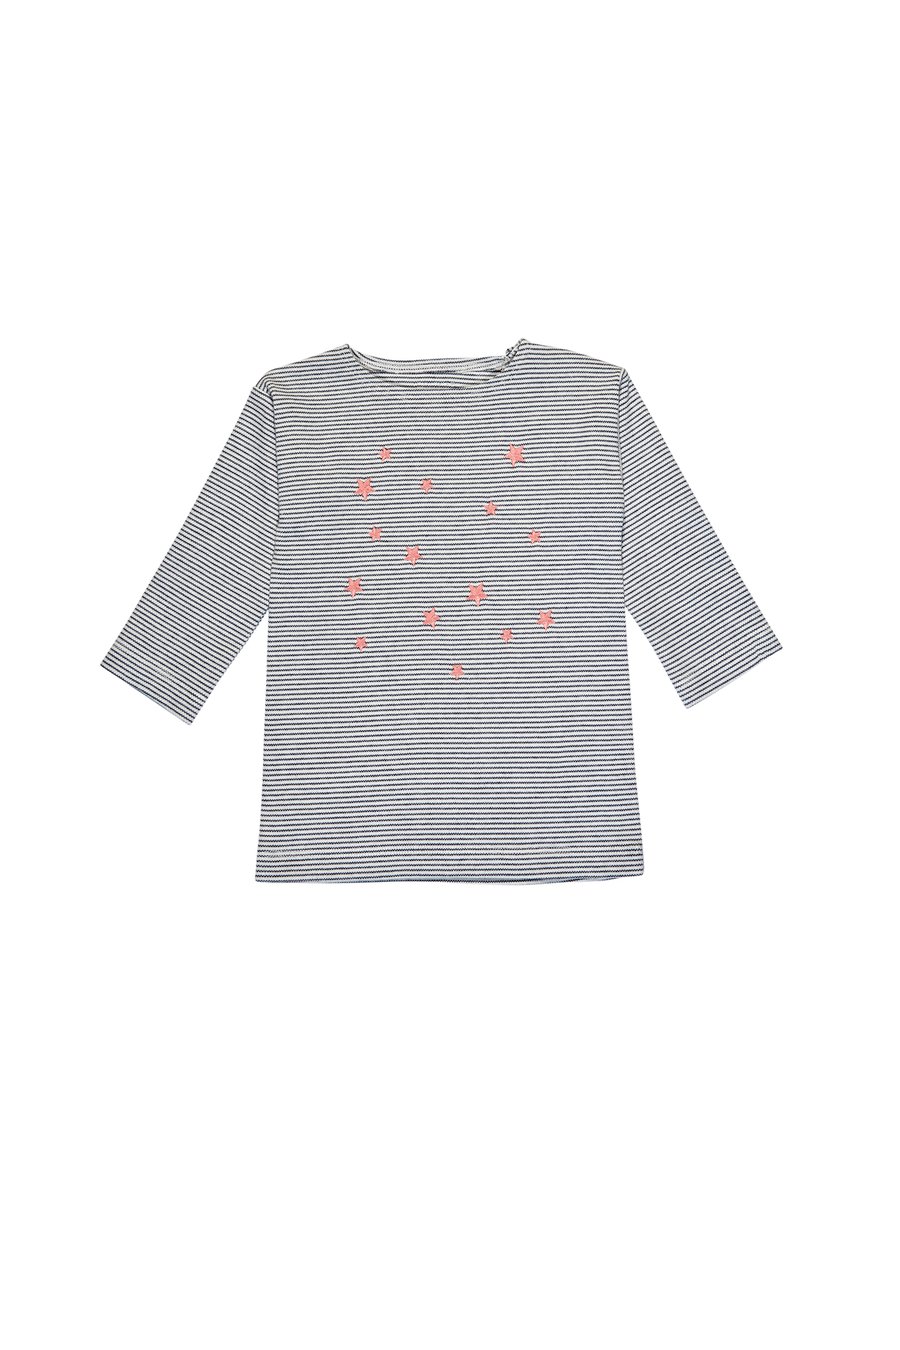 Image of blau gestreiftes T-Shirt mit einem gestickten rosa Sternchen Art.235817 (E)